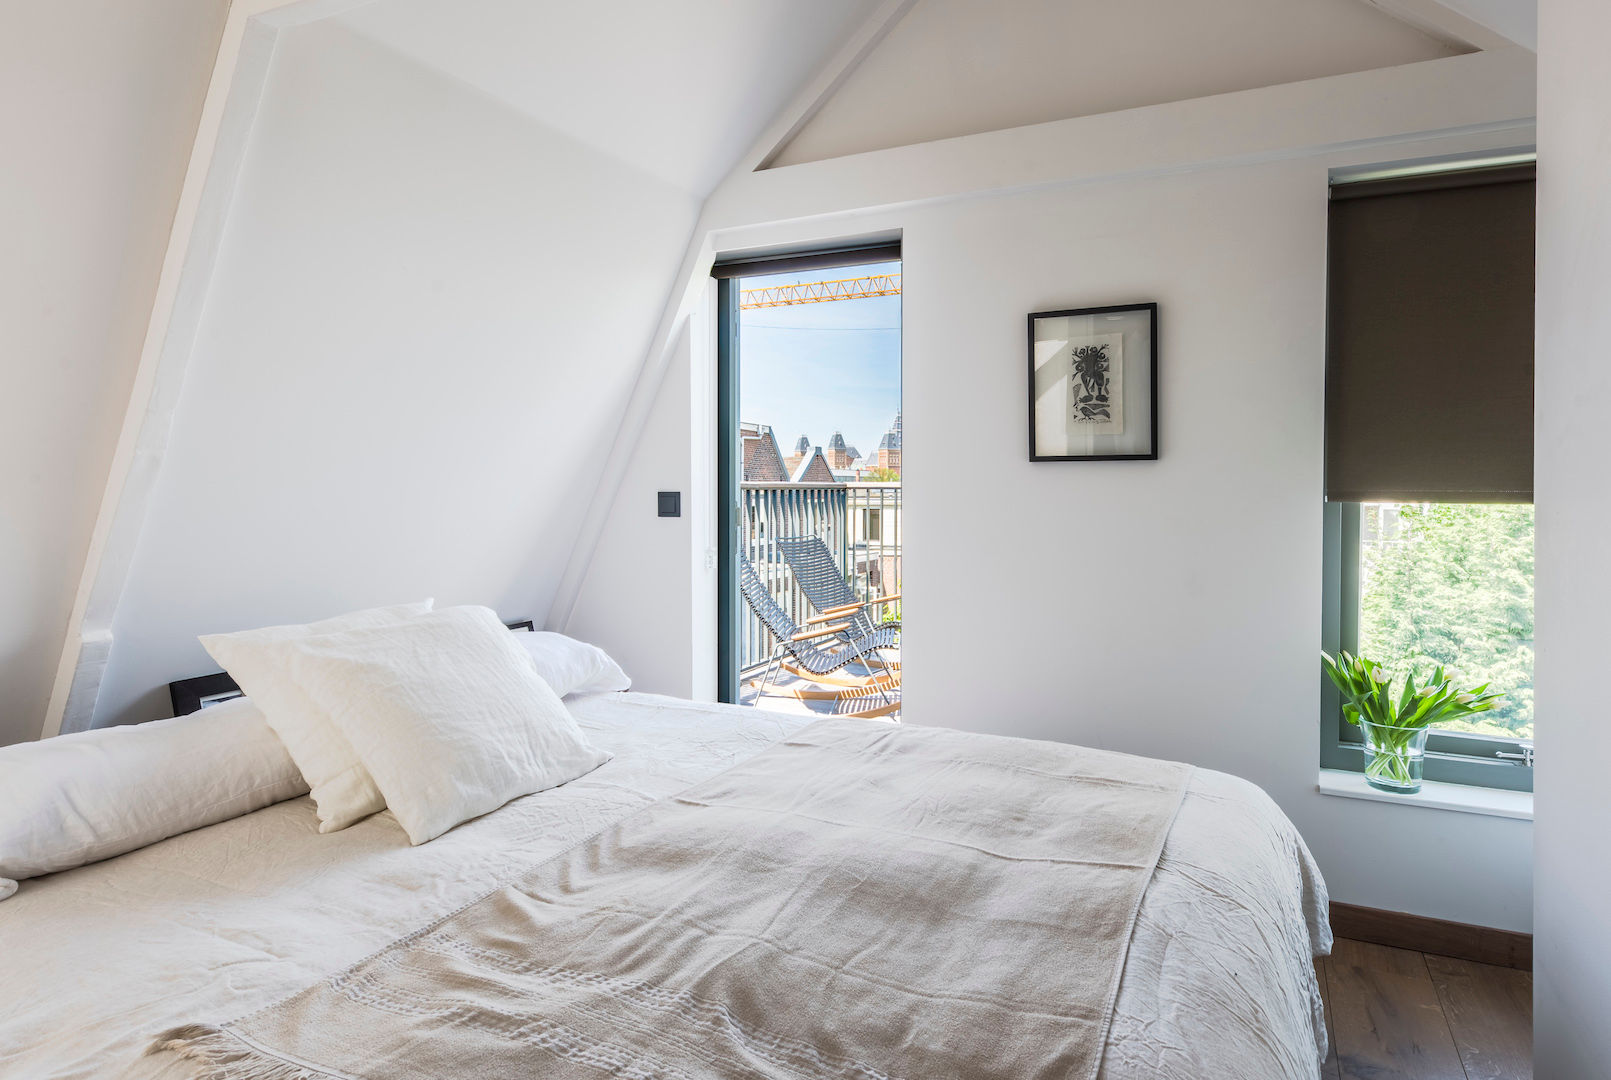 Loft bedroom homify Dormitorios modernos: Ideas, imágenes y decoración Bed,attic bedroom,loft bedroom,small bedroom